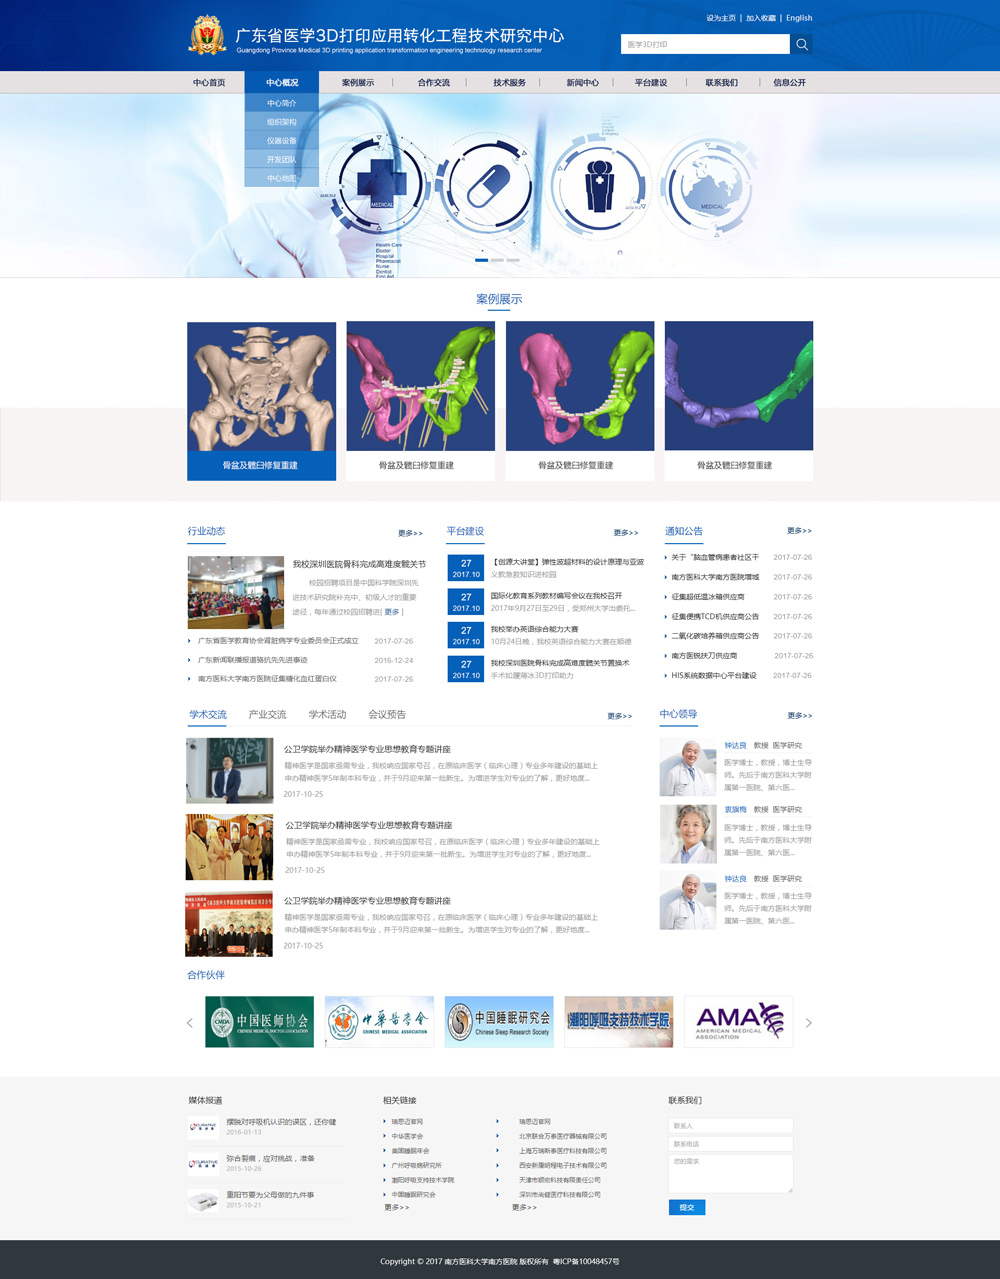 广东省医学3D打印应用转化工程技术研究中心网站建设项目